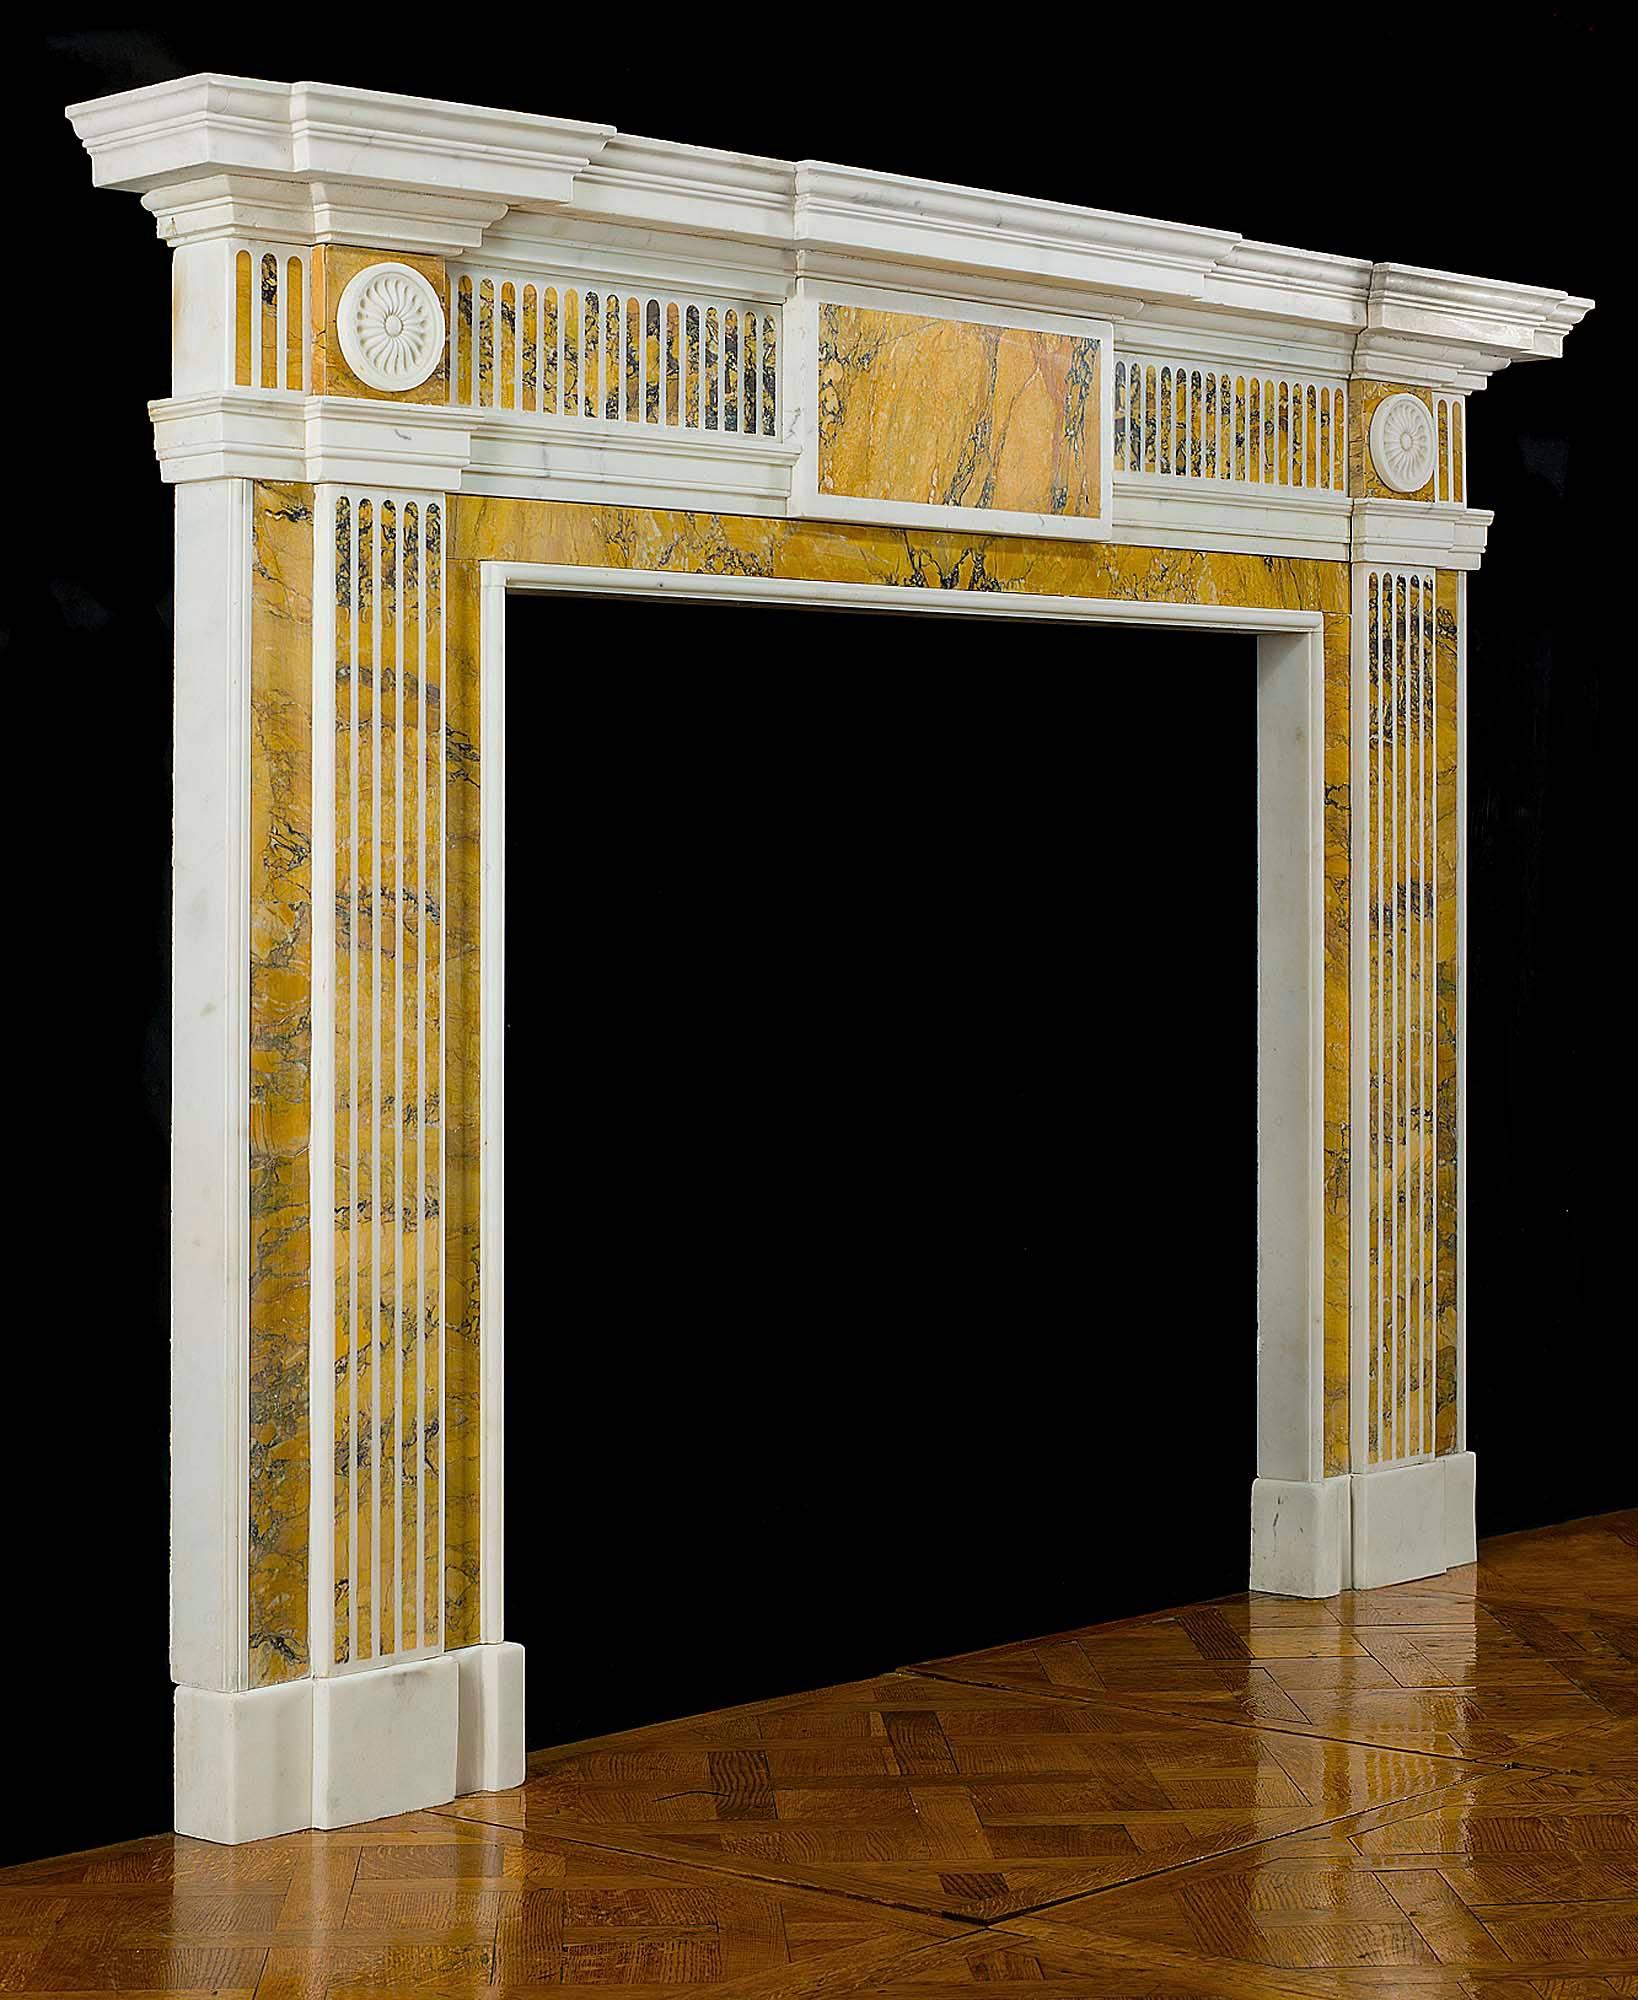 Ein spätgeorgianischer neoklassizistischer Kamin in der Art von Robert Adams, geschnitzt aus weißem statuarischem Marmor mit Einlagen aus gelbem Siena-Marmor. Die breite Front Regal über dem kannelierten Fries durch eine große Tafel auch von violett